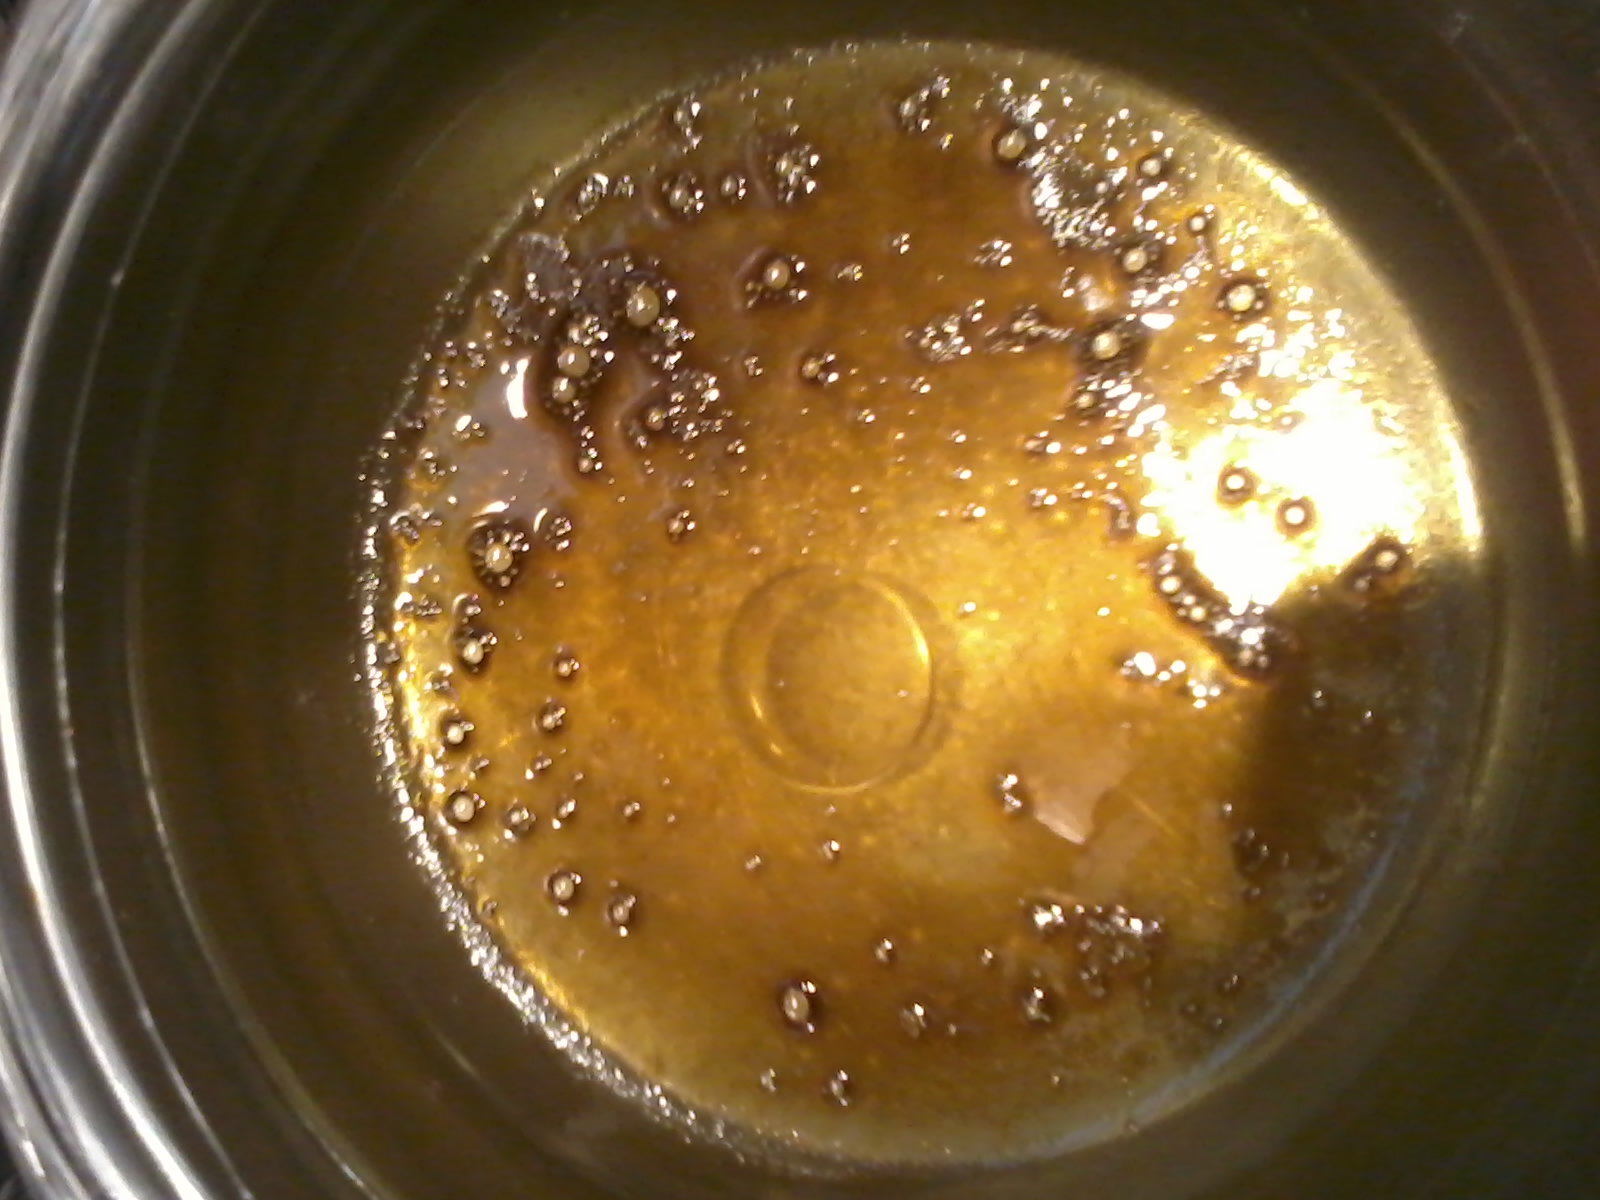 Fase di evaporazione dell'alcol: evaporazione a bagno maria del solvente utilizzato per l'estrazione